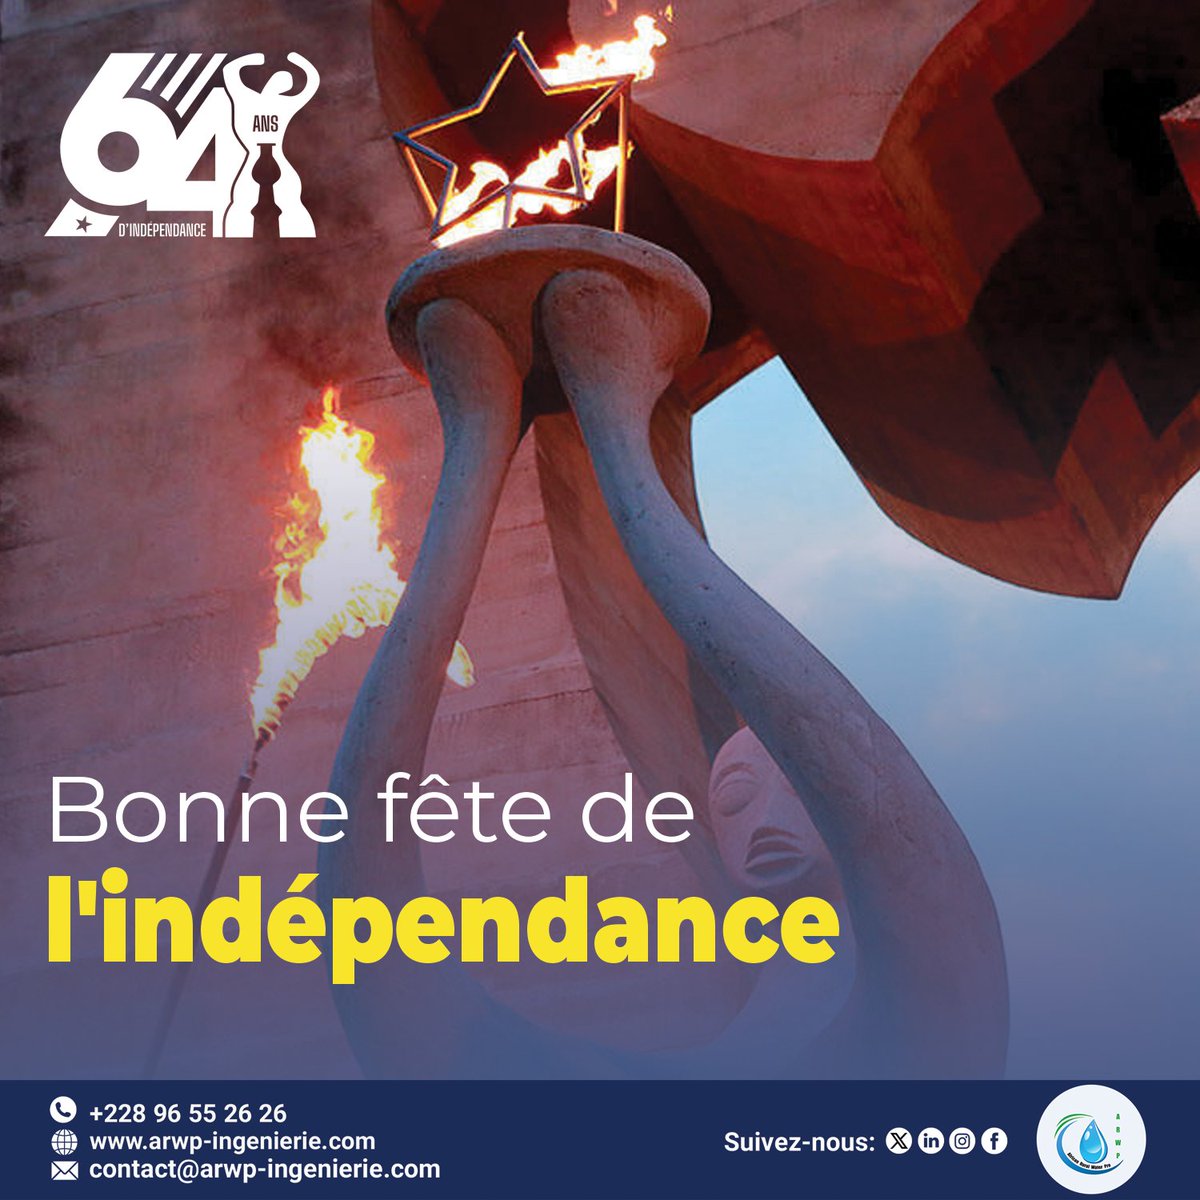 En ce jour de la célébration du 64 ème anniversaire de l'indépendance du Togo, ARWP souhaite à tous les togolais une joyeuse fête ! Que cette journée soit empreinte de fierté, de solidarité et de bonheur. 
Vive le Togo ! 🇹🇬 
#ARWP #FêteNationale #TogoIndependance